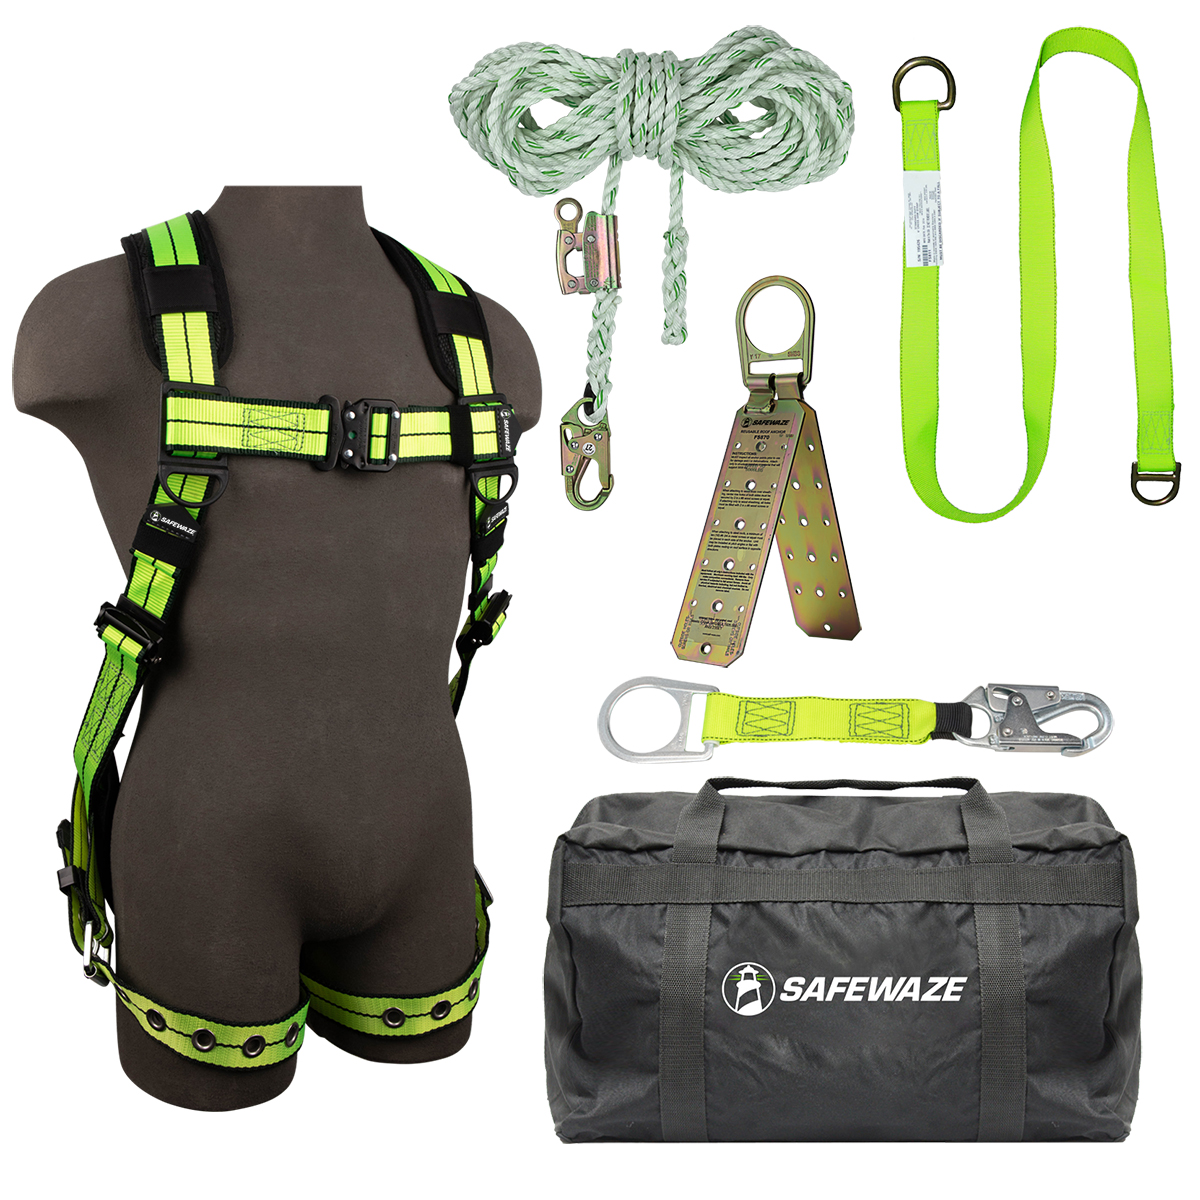 SafeWaze PRO+ Bag Roof Kit: FS-FLEX185-2X, FS700-50GA, FS813, FS811-20, FS870, FS8175